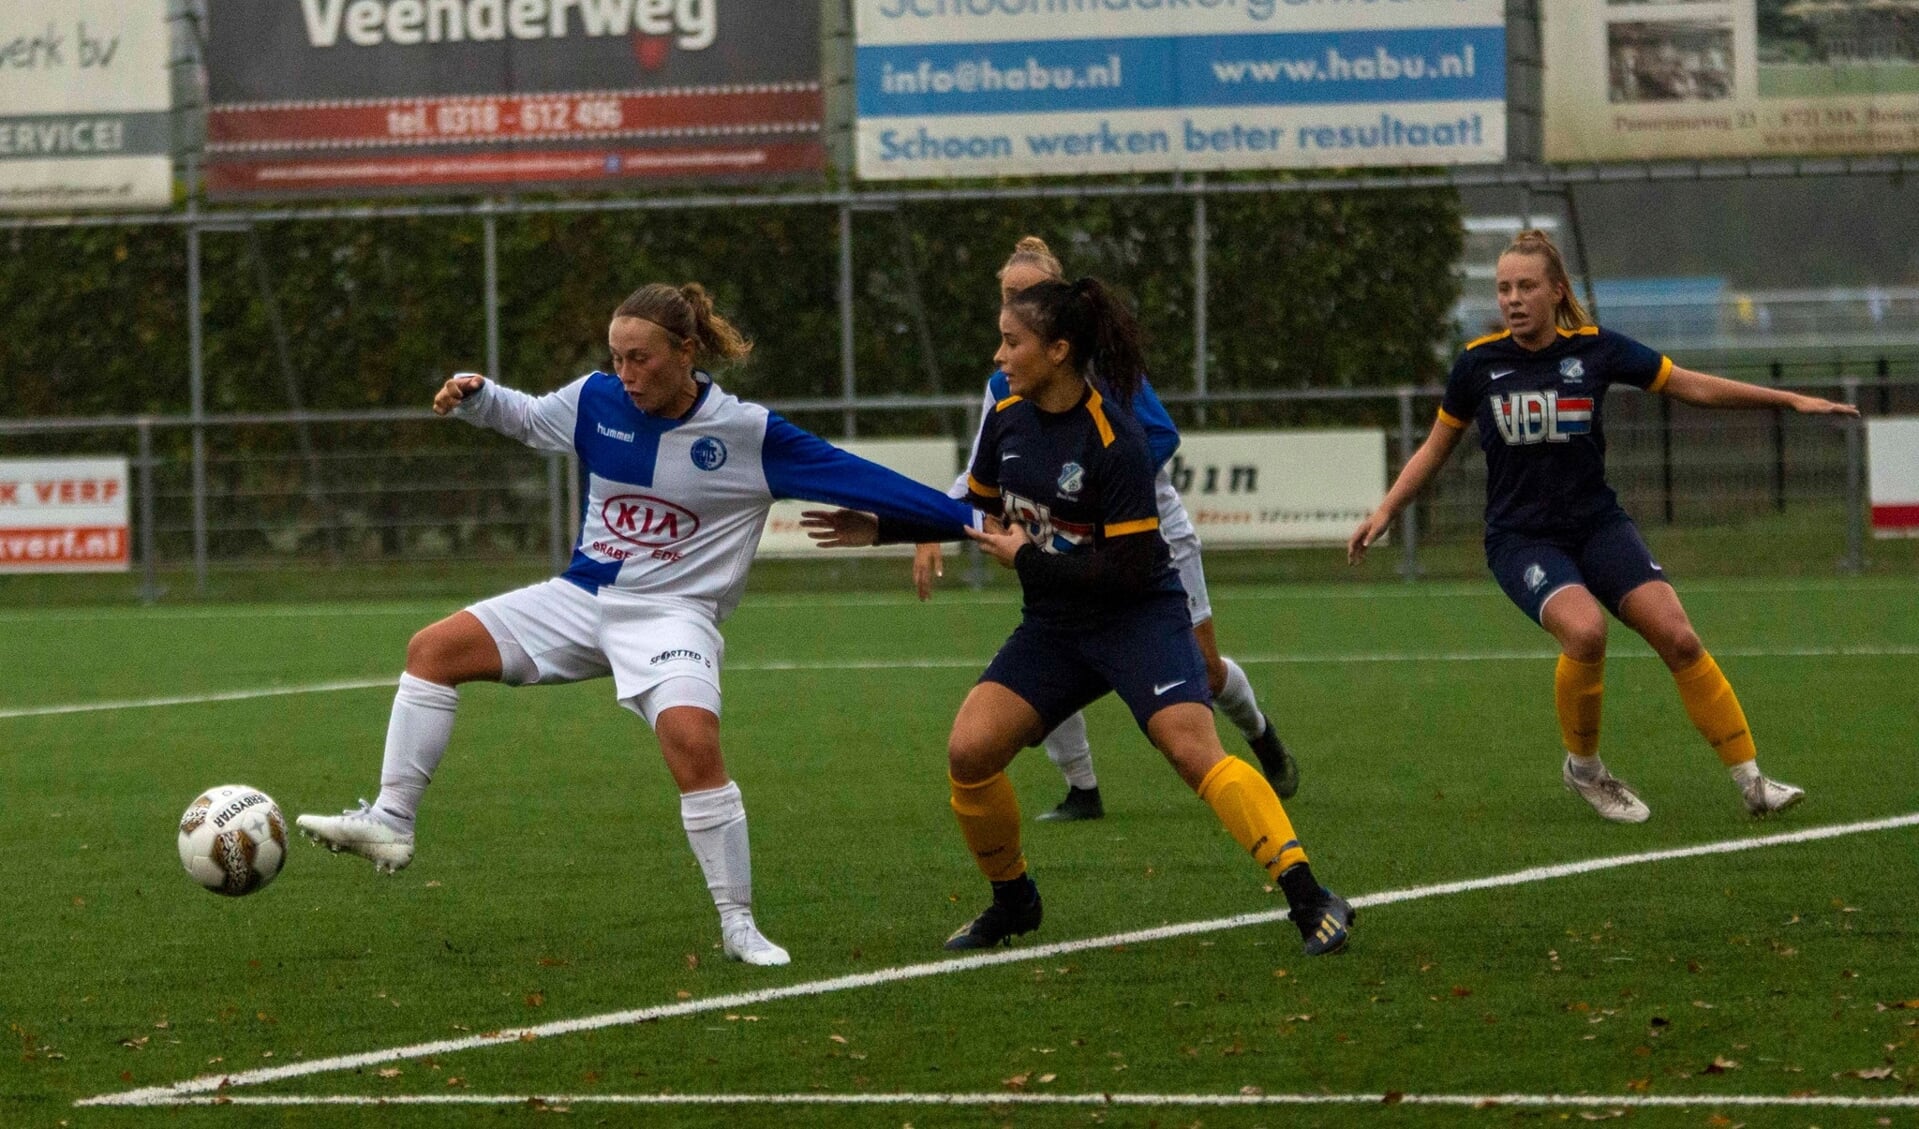 Dominique van Wensveen maakte het derde doelpunt